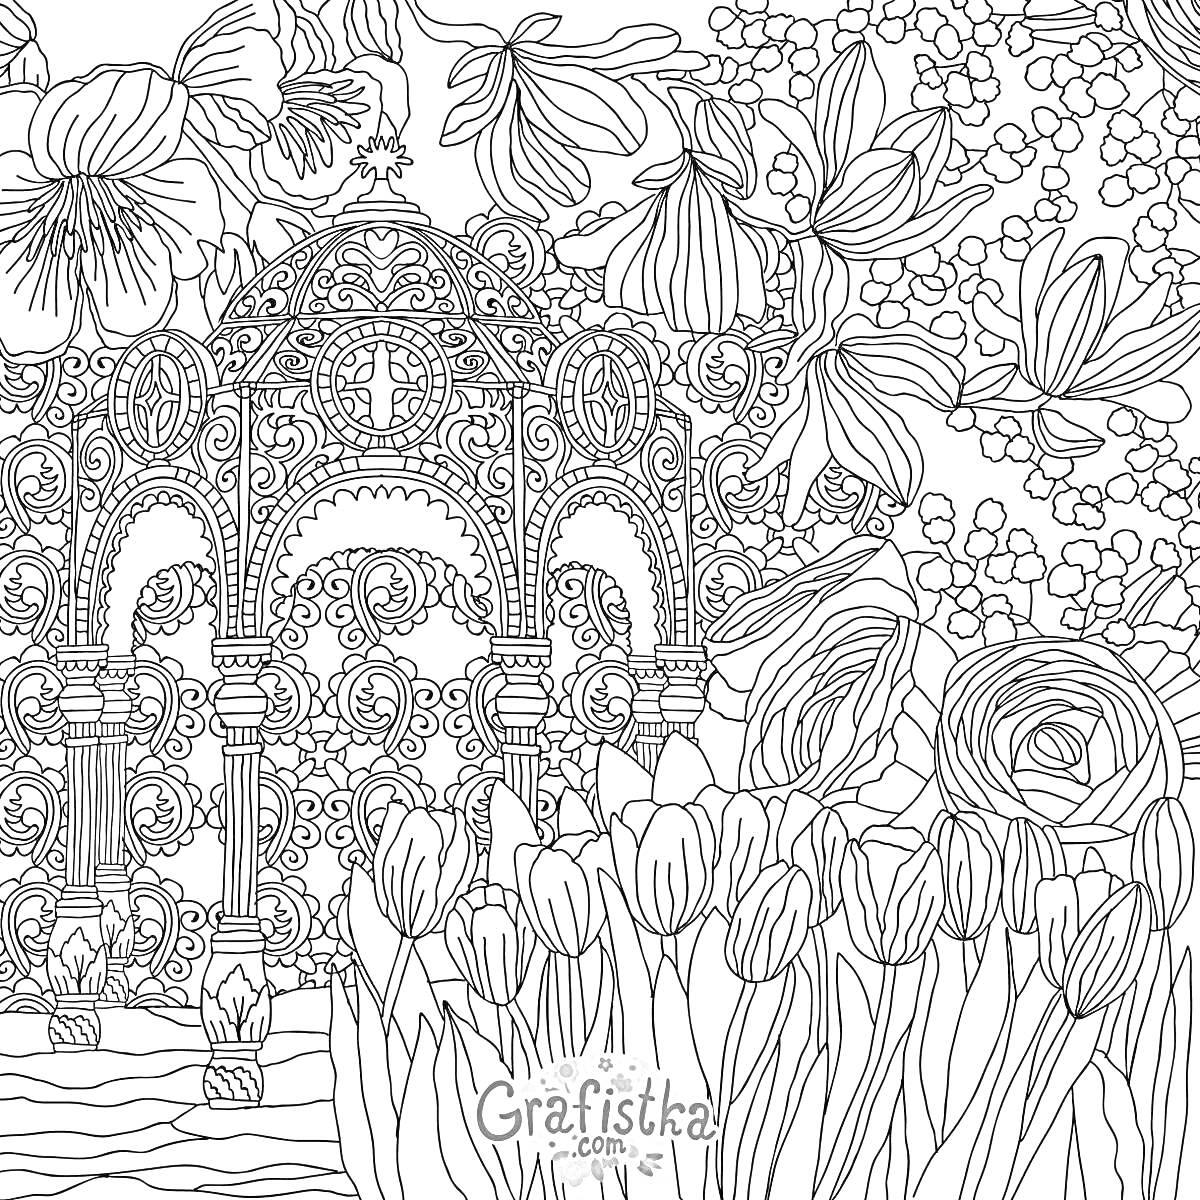 Раскраска Купольный павильон среди цветов, включая тюльпаны, розы и другие декоративные растения